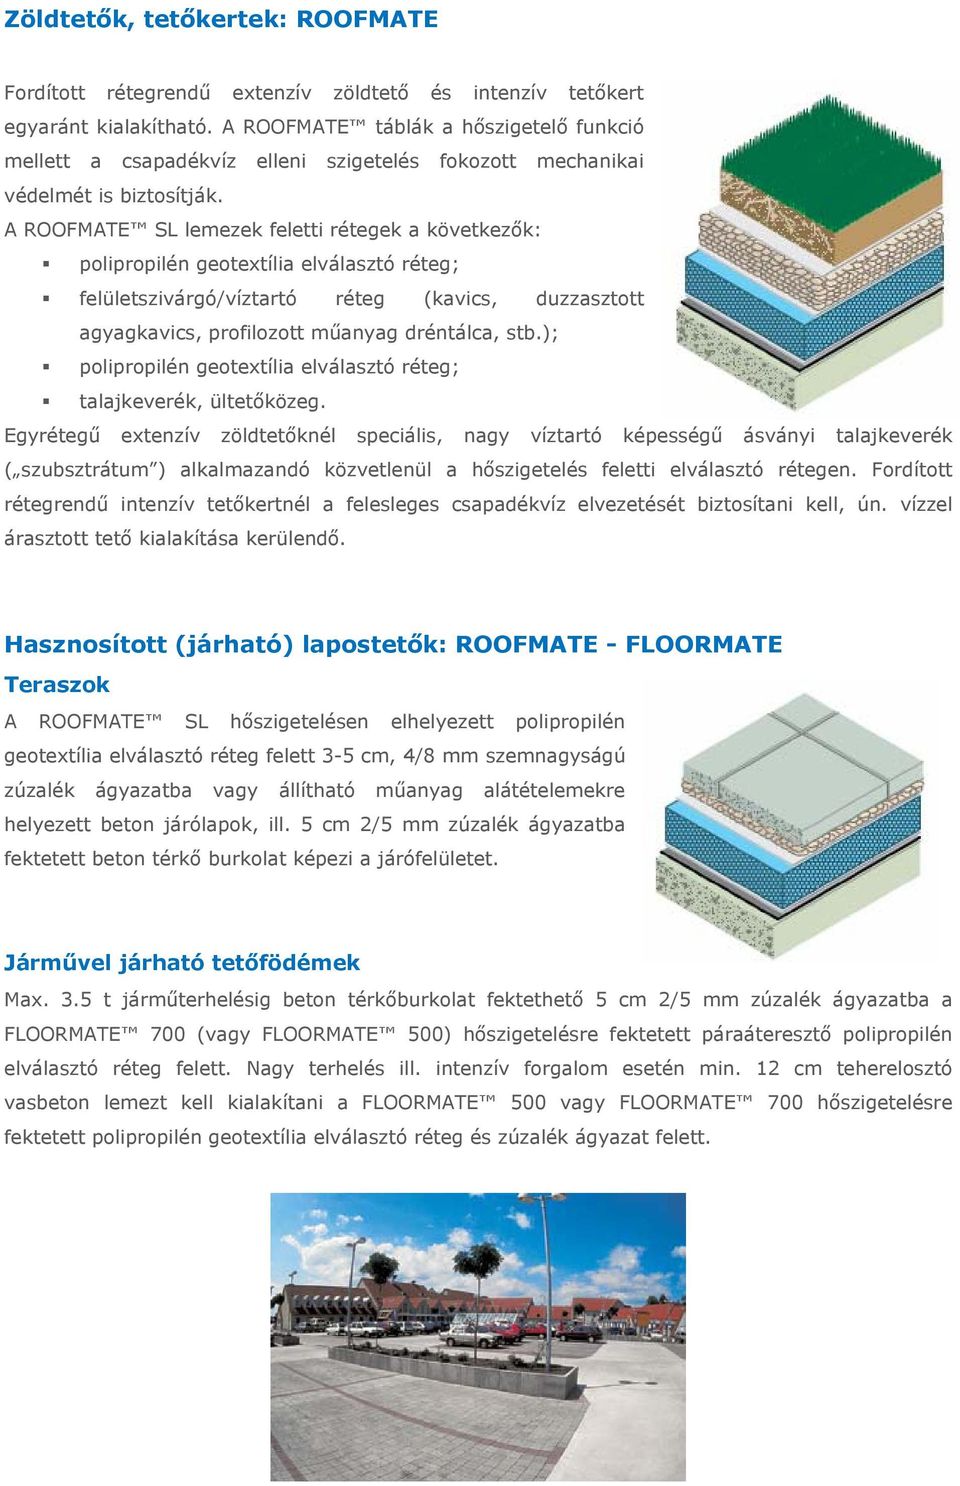 A ROOFMATE SL lemezek feletti rétegek a következők: polipropilén geotextília elválasztó réteg; felületszivárgó/víztartó réteg (kavics, duzzasztott agyagkavics, profilozott műanyag dréntálca, stb.